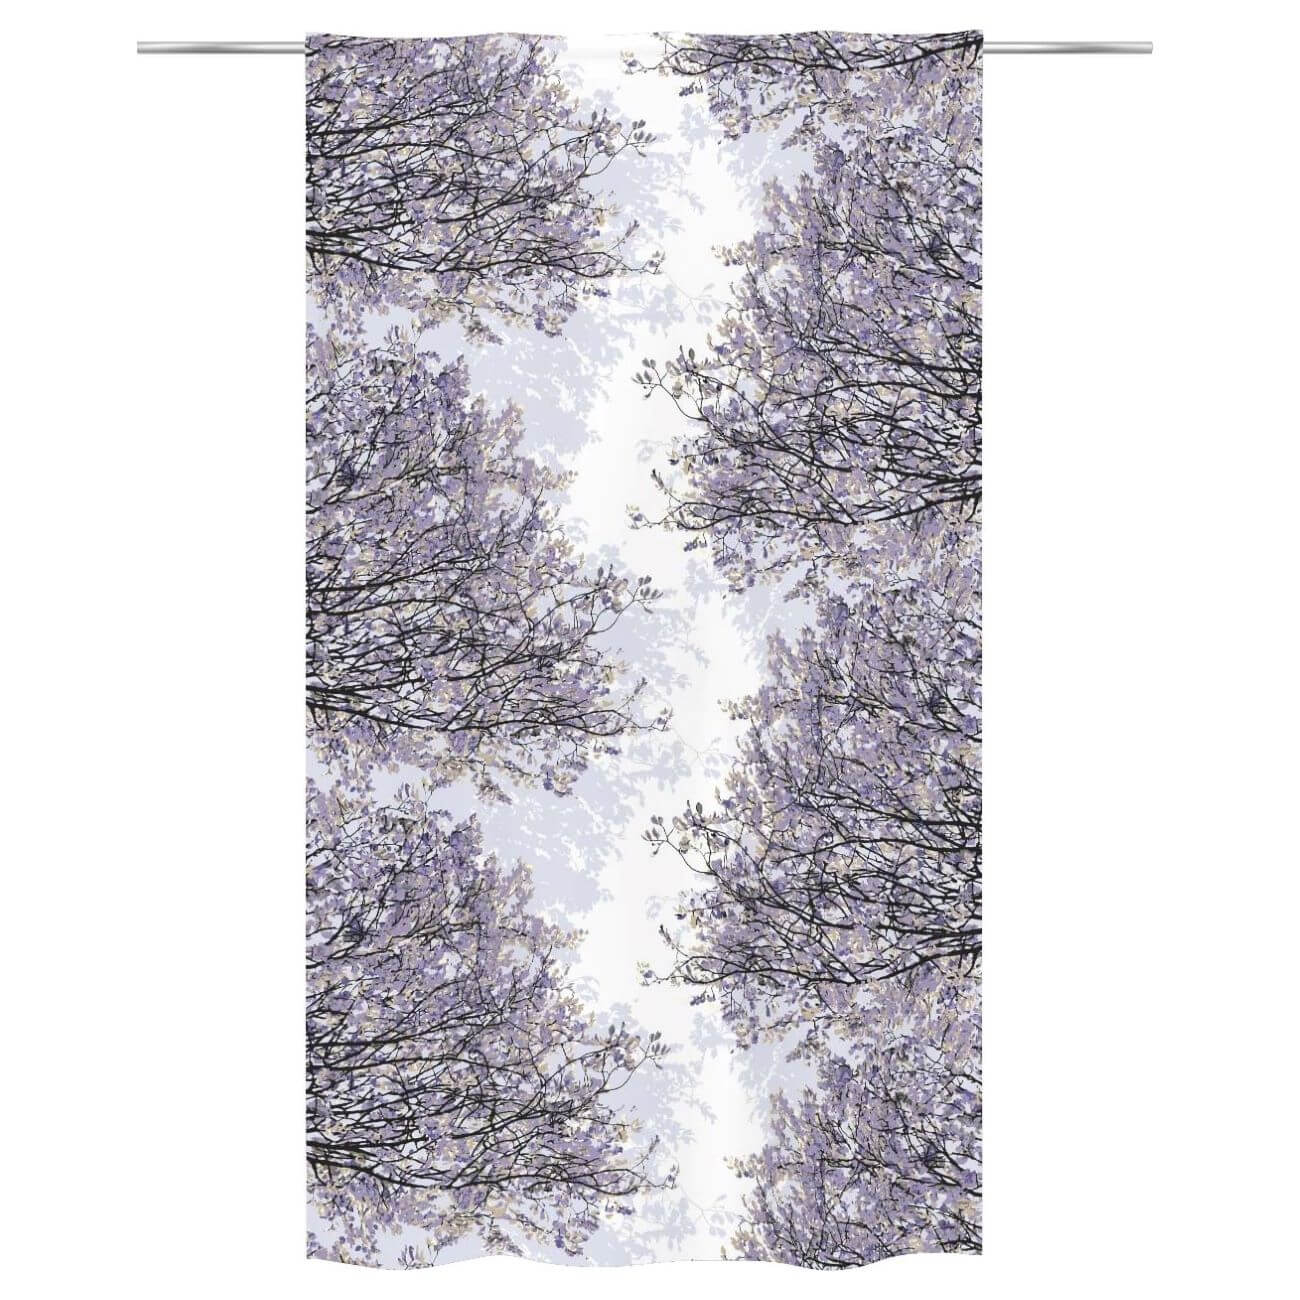 Zasłony bawełniane HAVINA fioletowe. Na biały tle wzór w drobne gałęzie i liście drzewa odcieniach koloru fioletowego. Widok zasłony na drążku. Skandynawski design